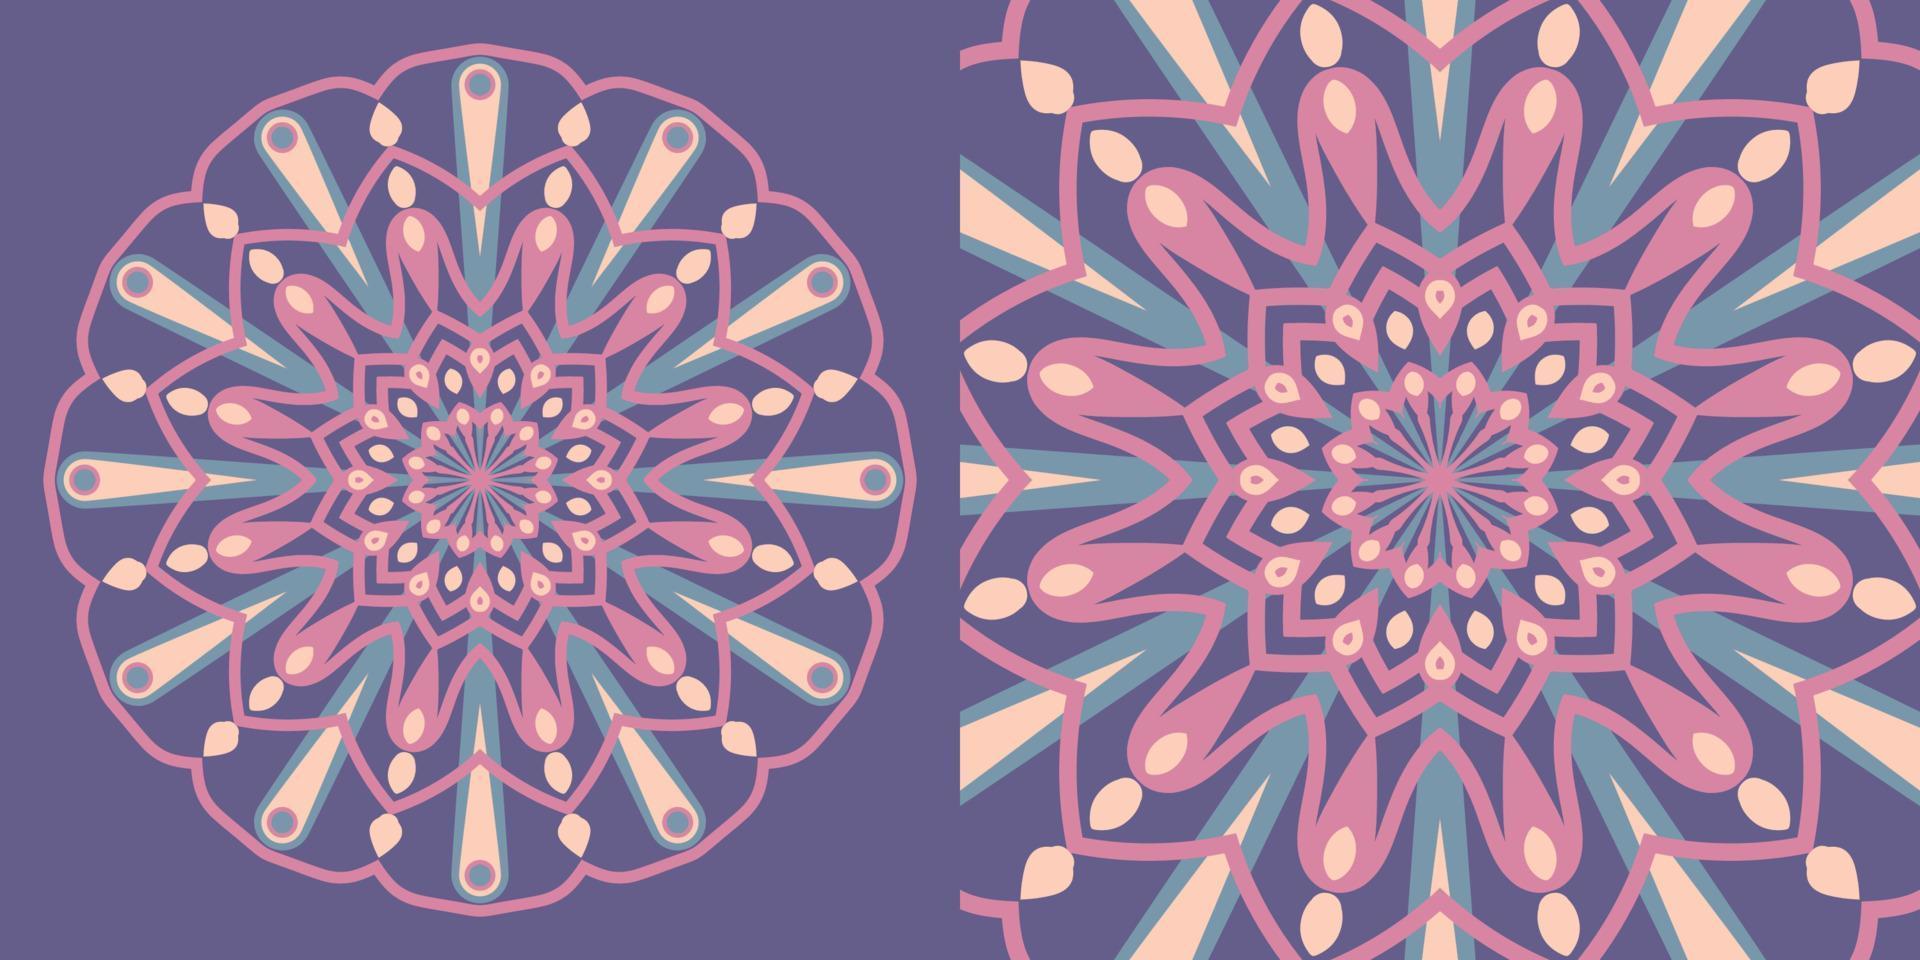 elemento de diseño de vector de flor de mandala simétrica circular abstracta de caleidoscopio de color vintage